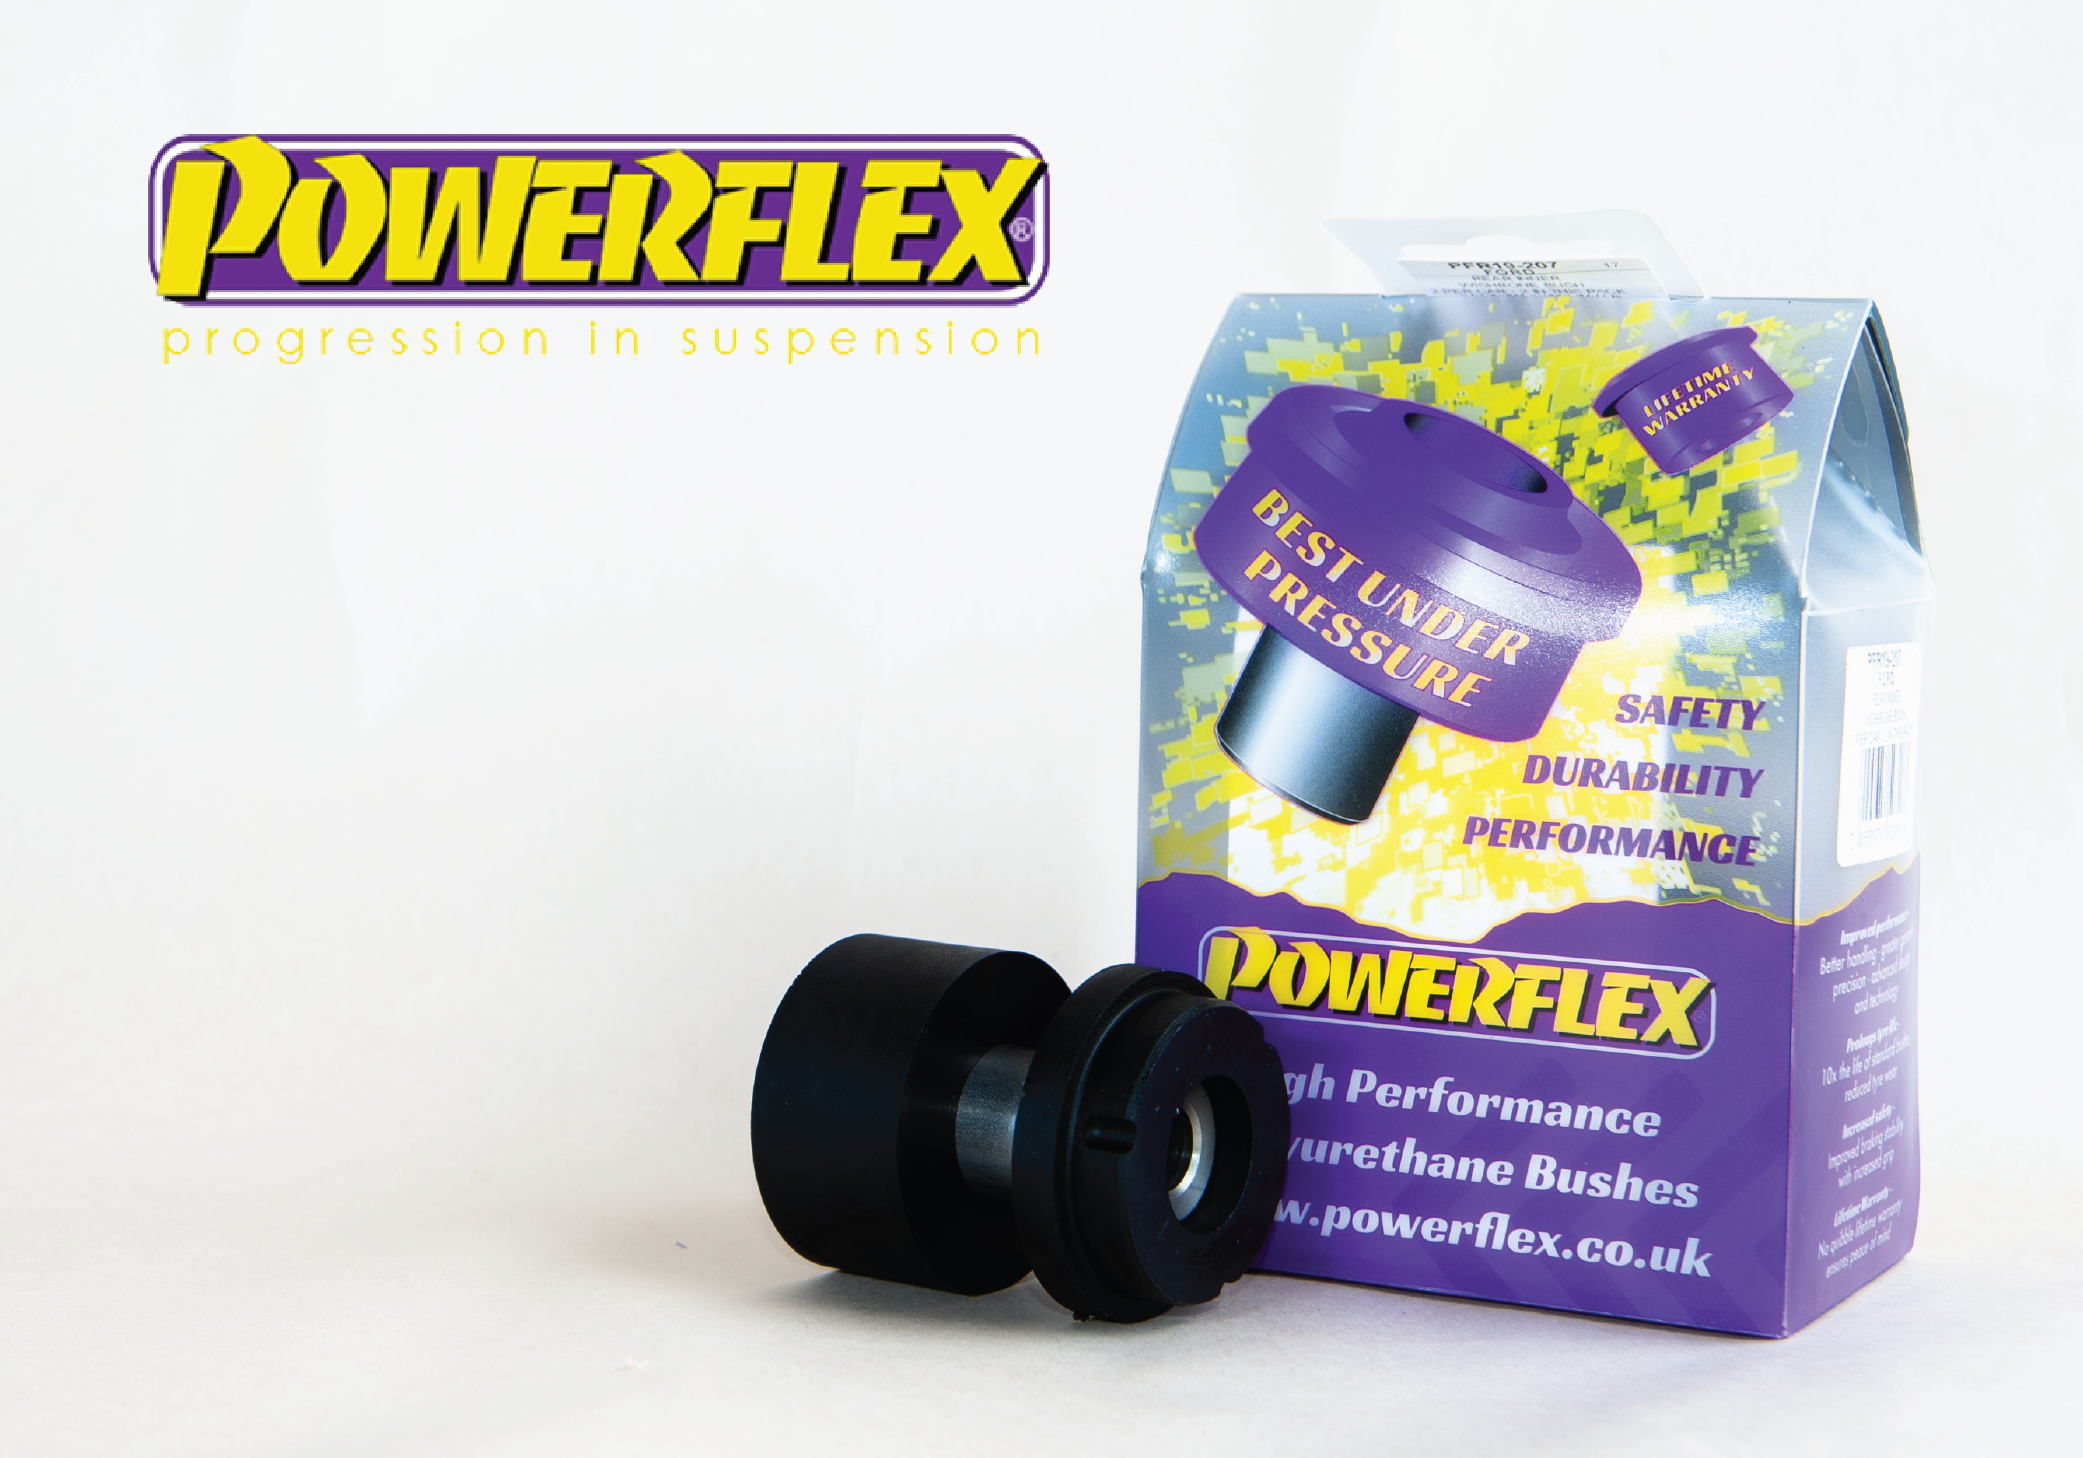 Powerflex Images-02-01.png